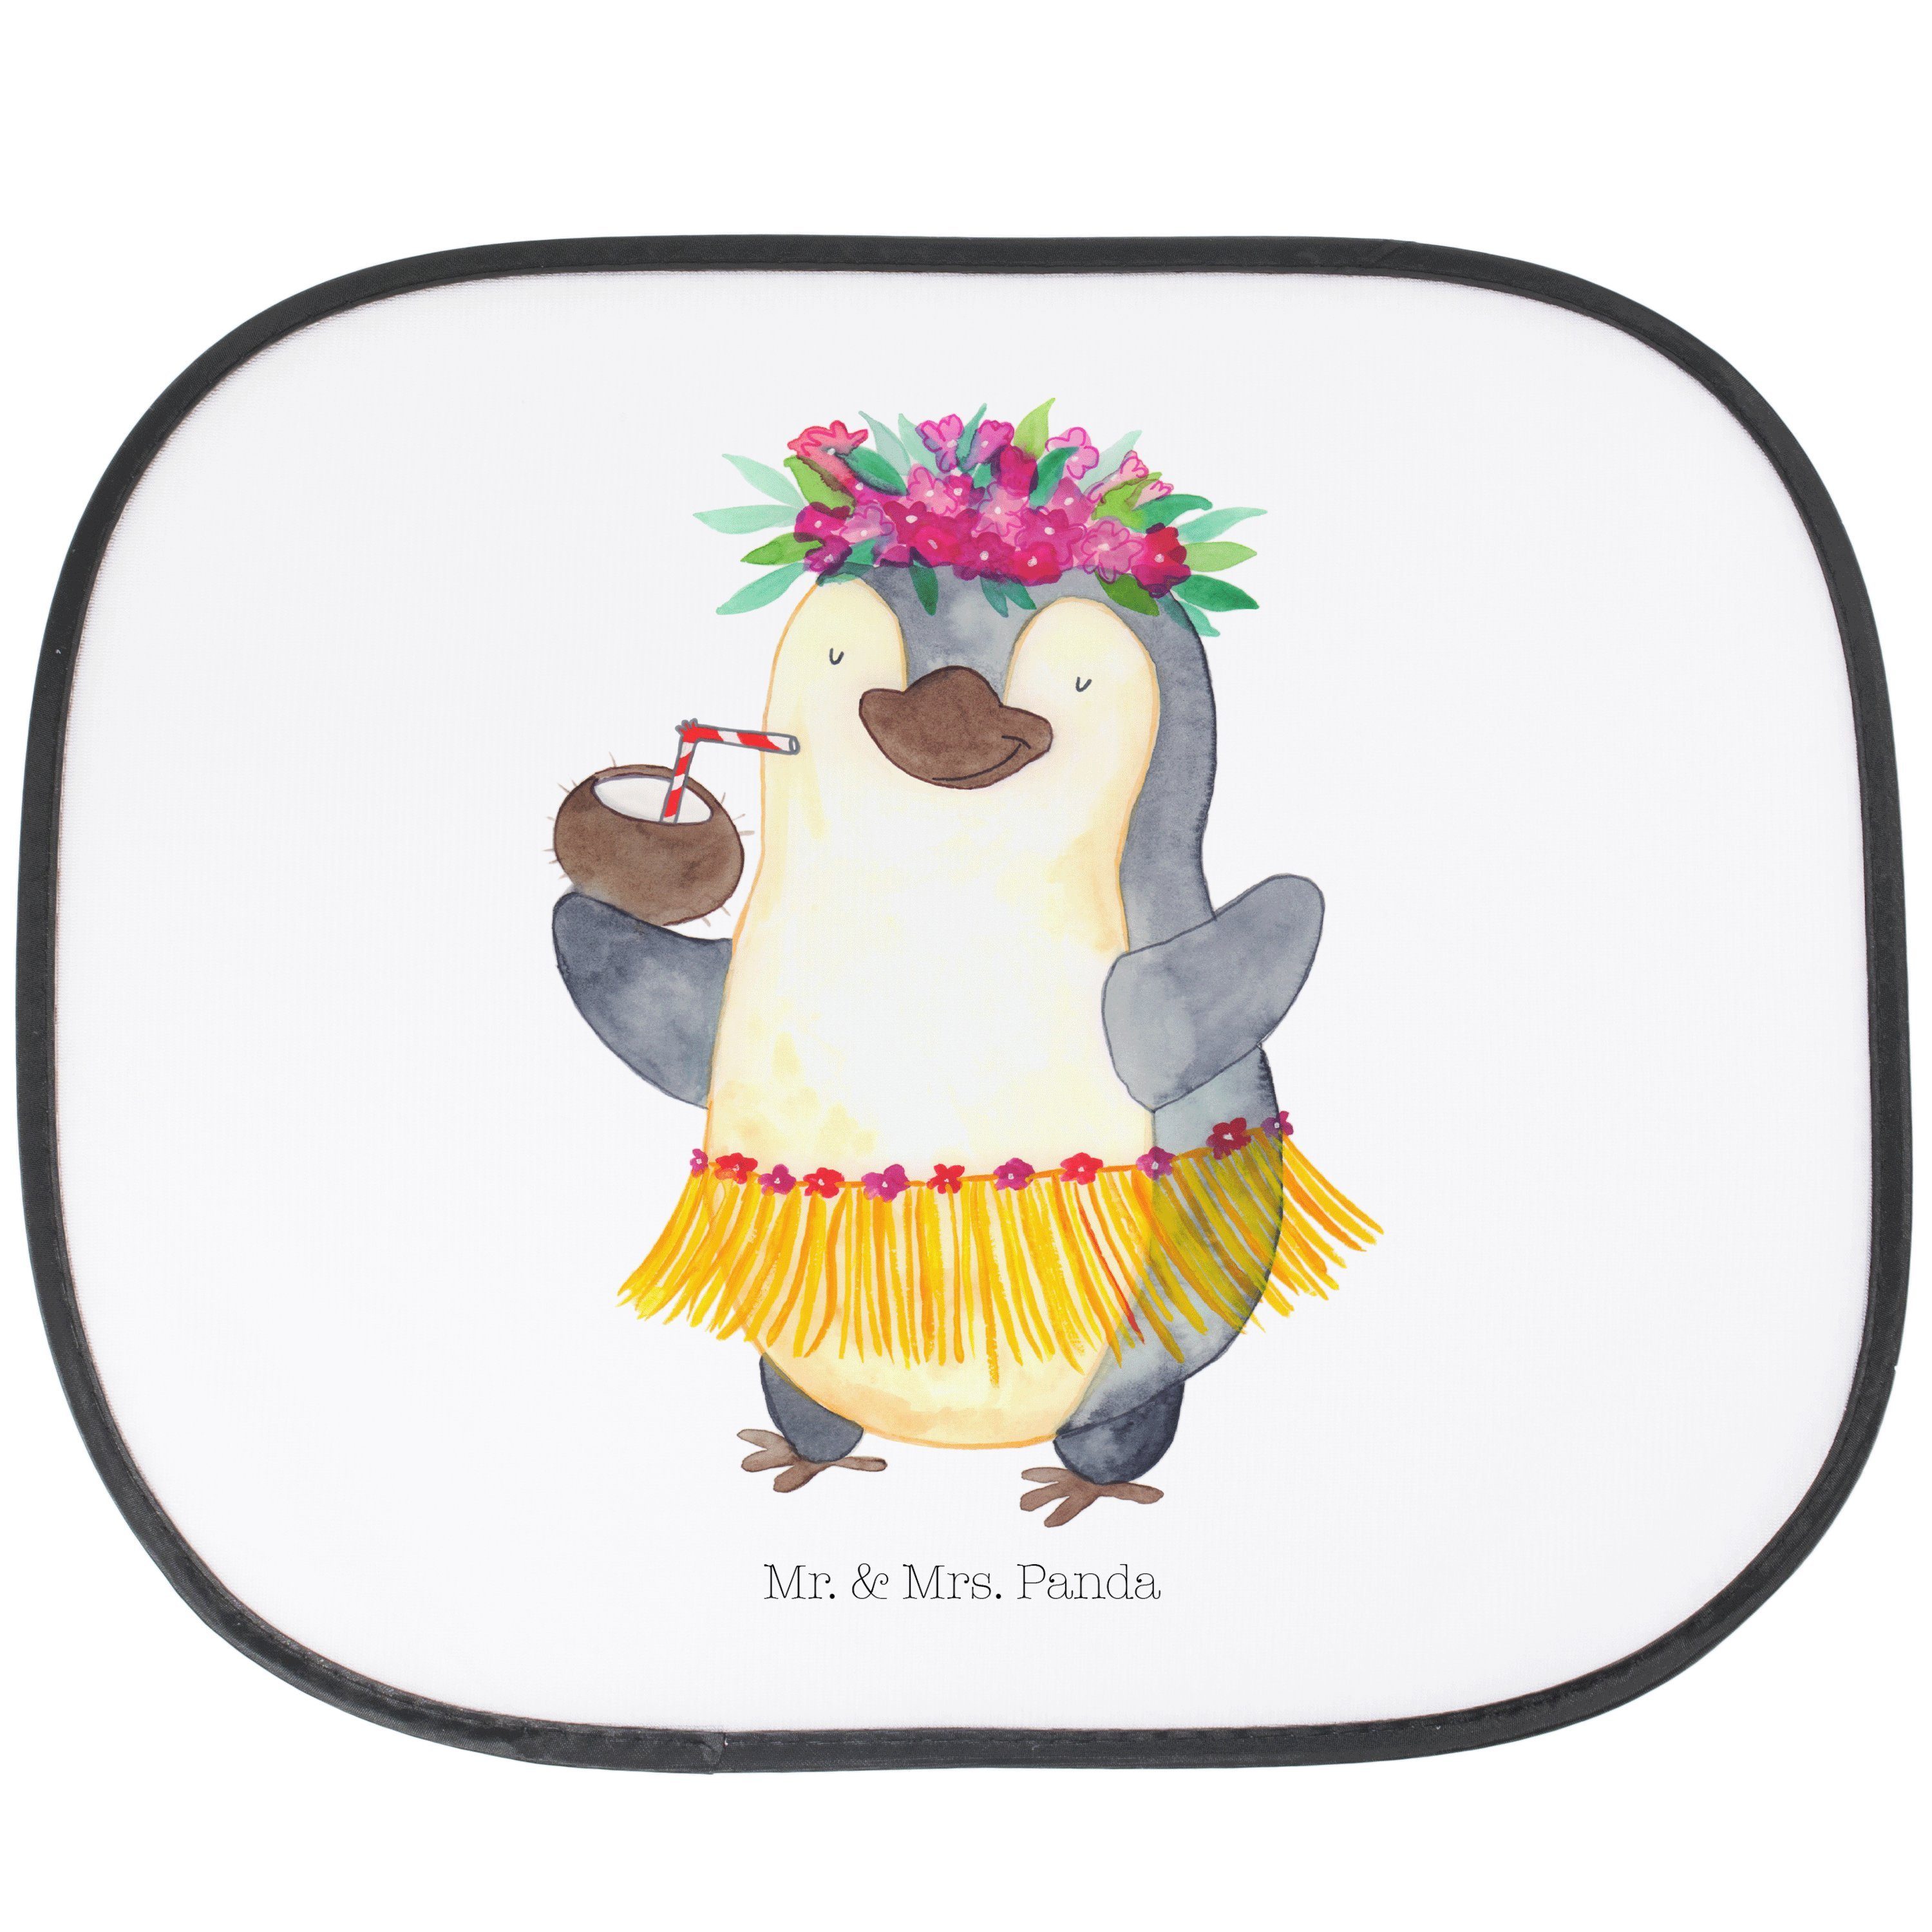 Sonnenschutz Pinguin Kokosnuss - Weiß - Geschenk, Aloha, Urlaub, Ferien, Sonnenble, Mr. & Mrs. Panda, Seidenmatt